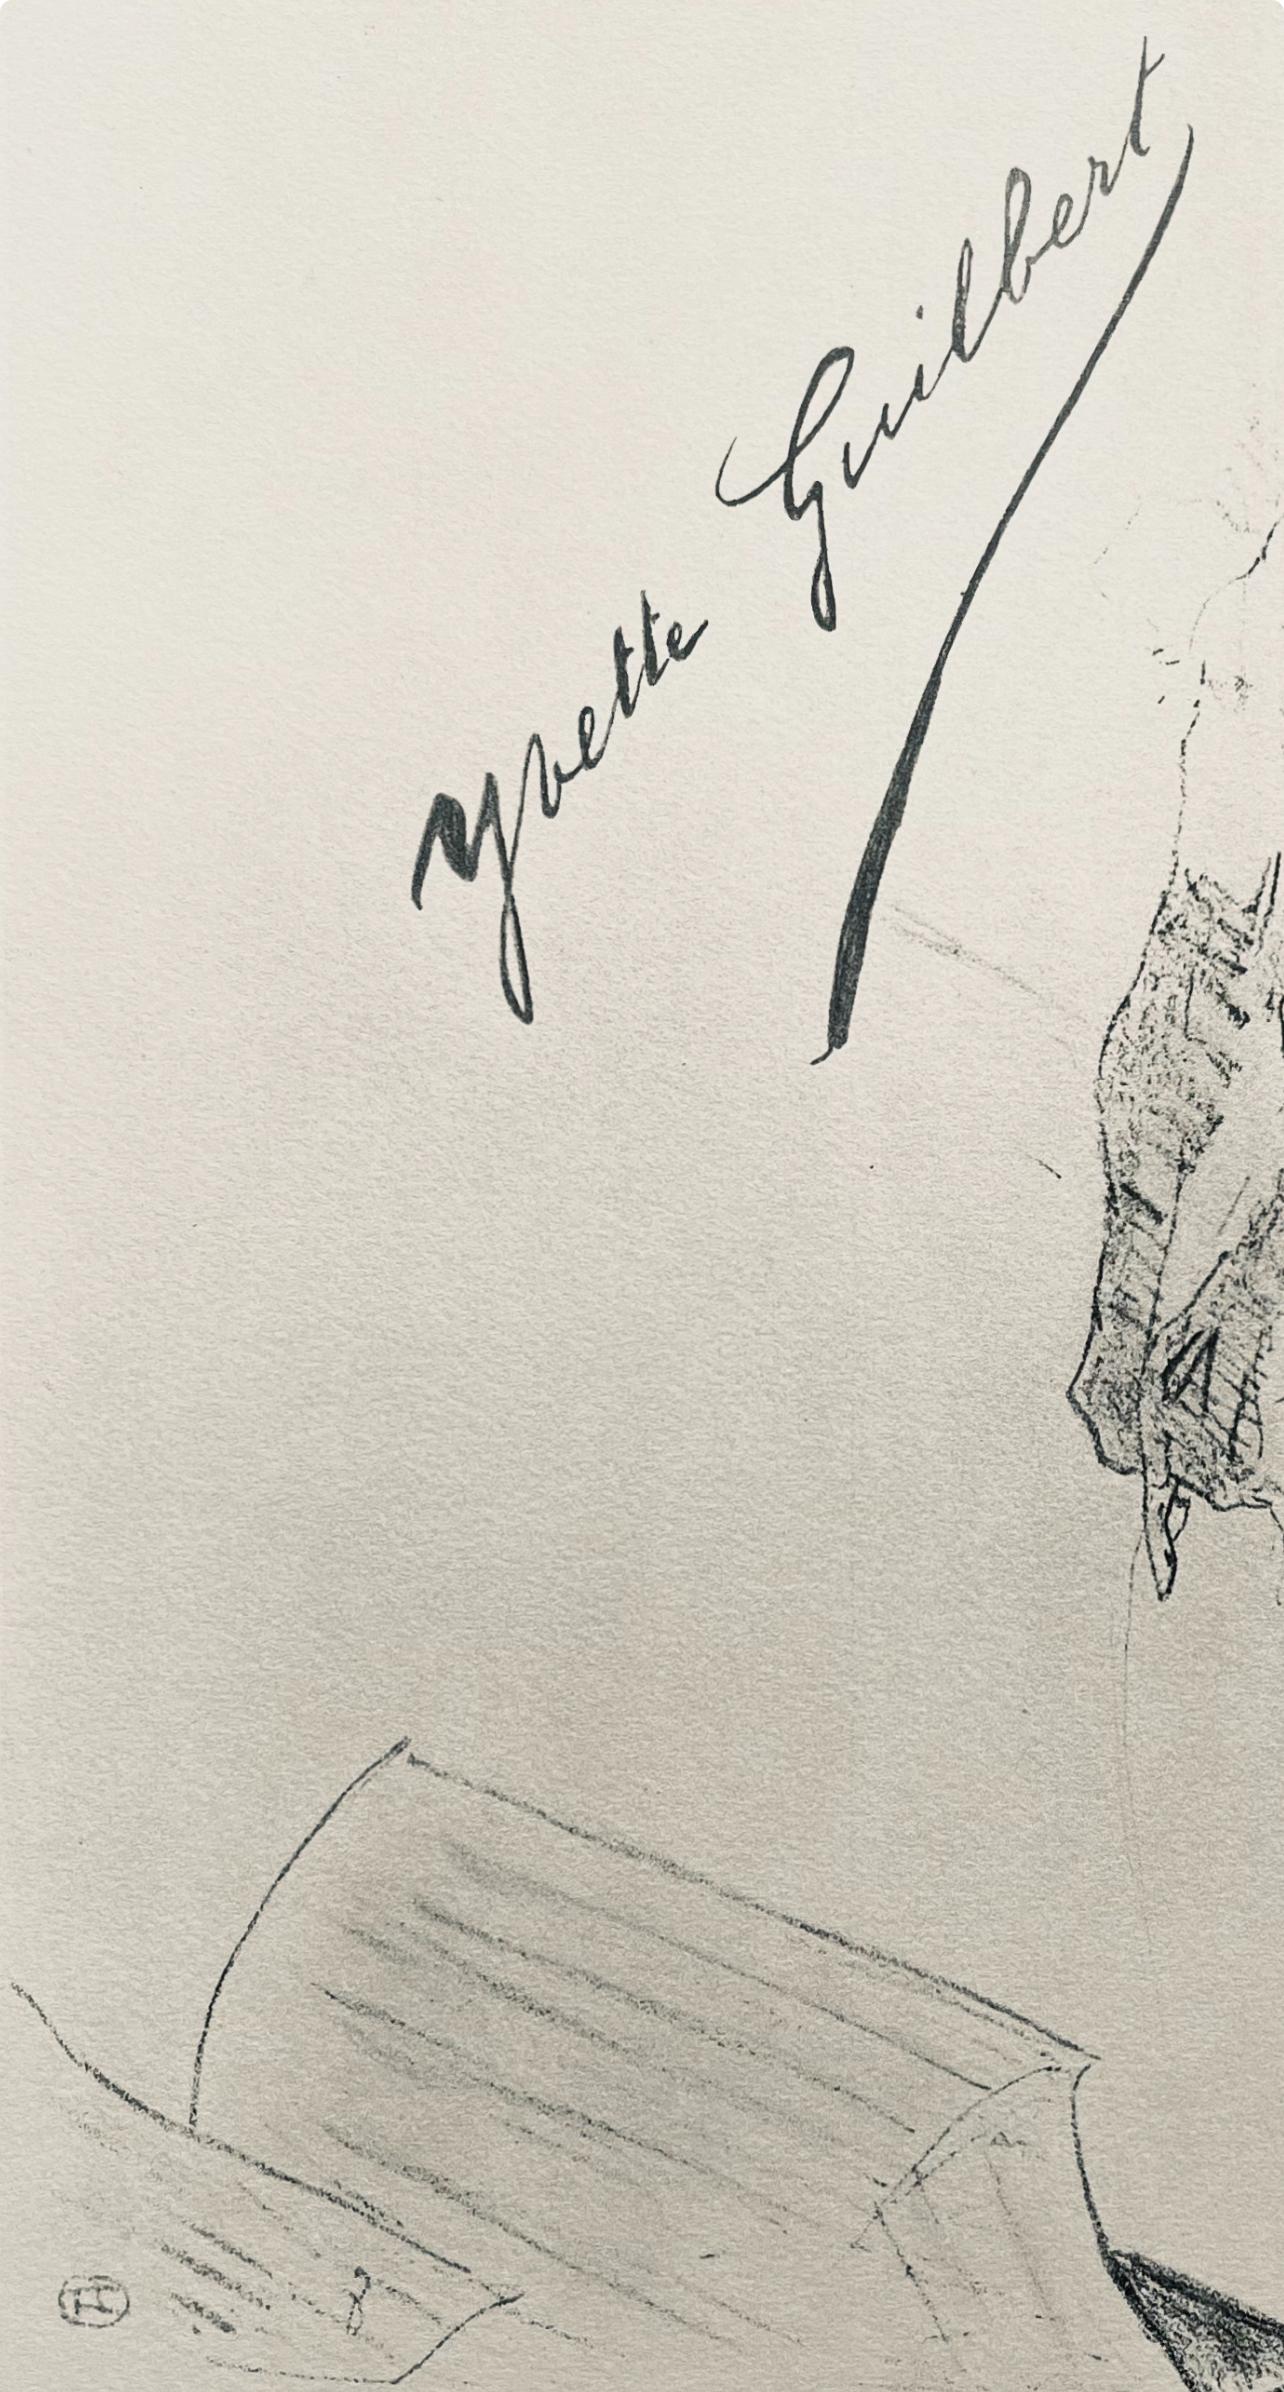 Toulouse-Lautrec, Composition, Yvette Guilbert vue par Toulouse-Lautrec (after) - Post-Impressionist Print by Henri de Toulouse-Lautrec